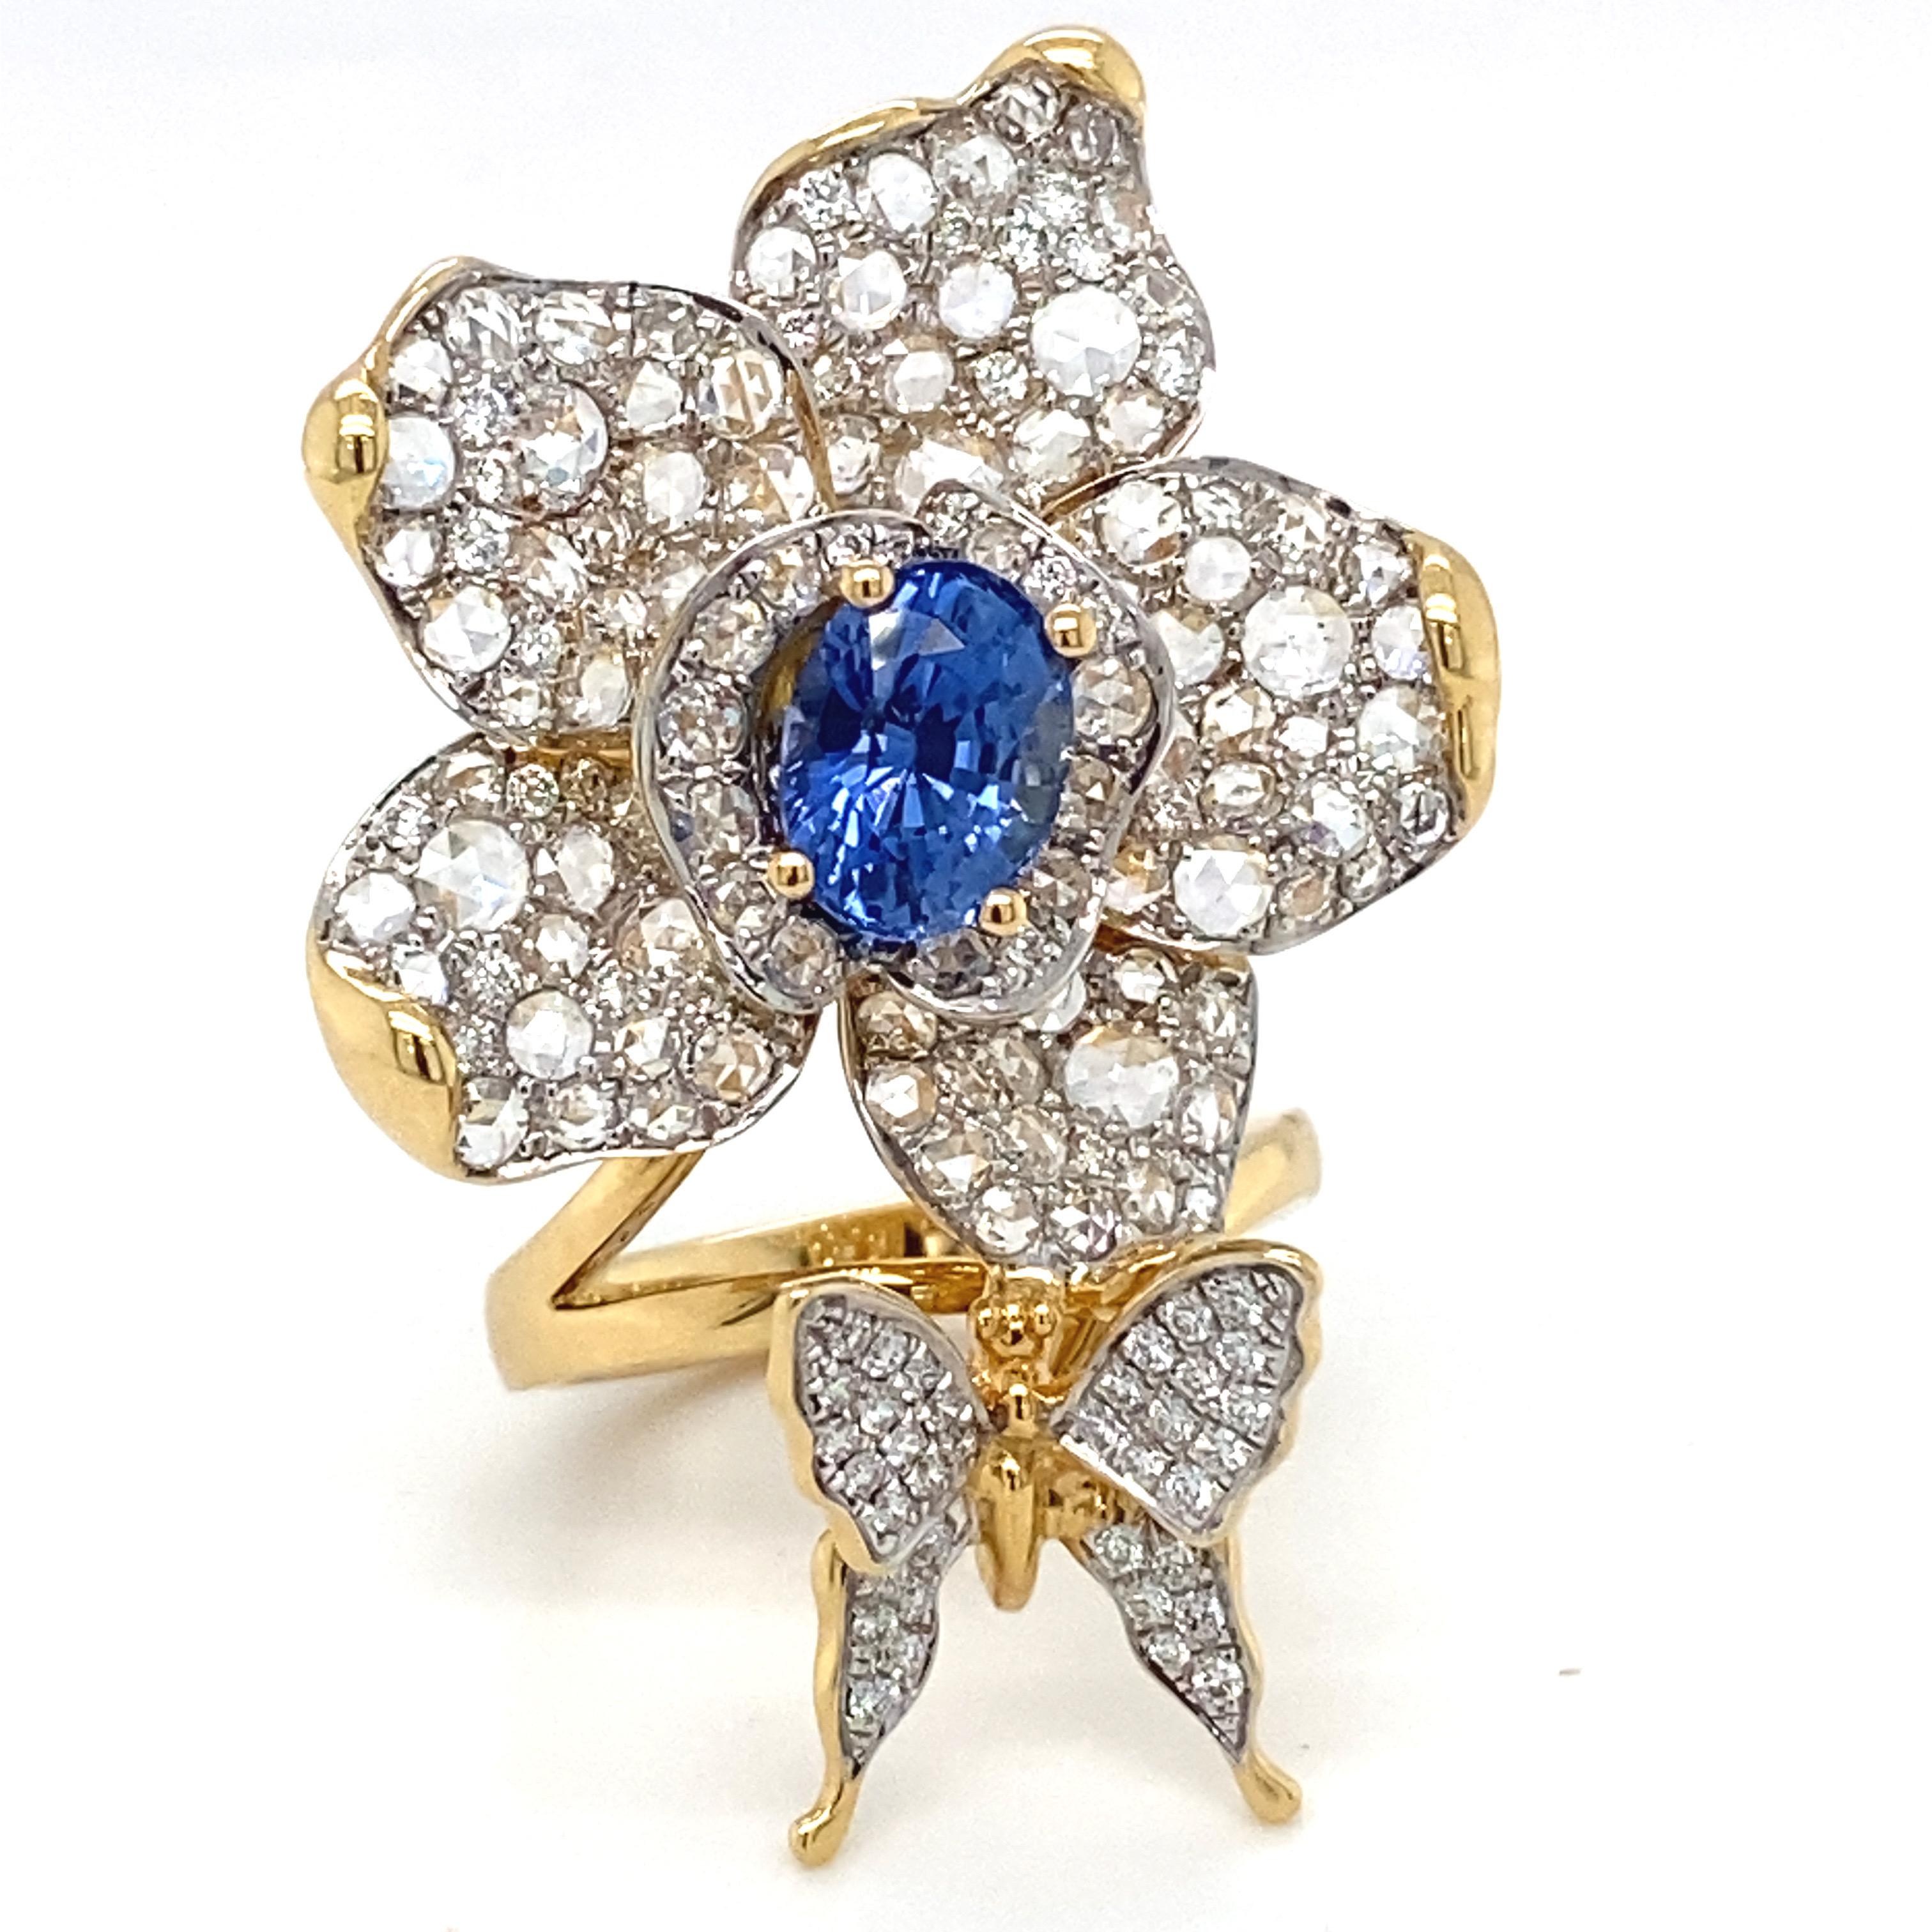 Dieser prächtige Blumenring besticht durch eine reizvolle Kombination aus blauem Saphir und Diamant. Die Blütenblätter und der Schmetterling sind mit weißen Diamanten in Pflasterfassung verziert. Jedes Detail wurde sorgfältig ausgearbeitet und